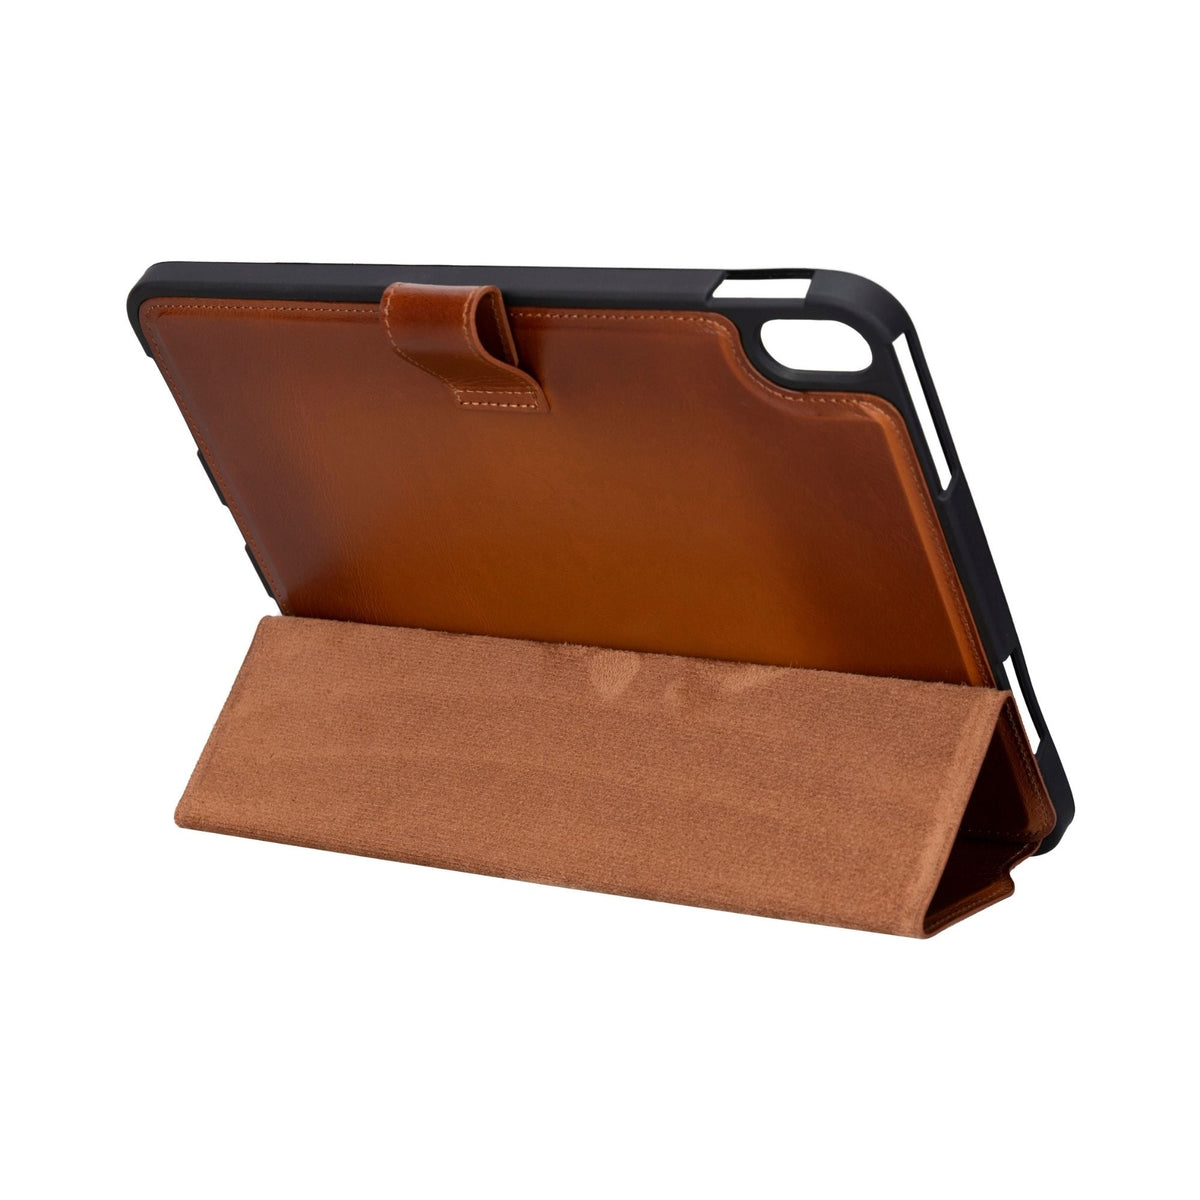 ipad 4 leather cases